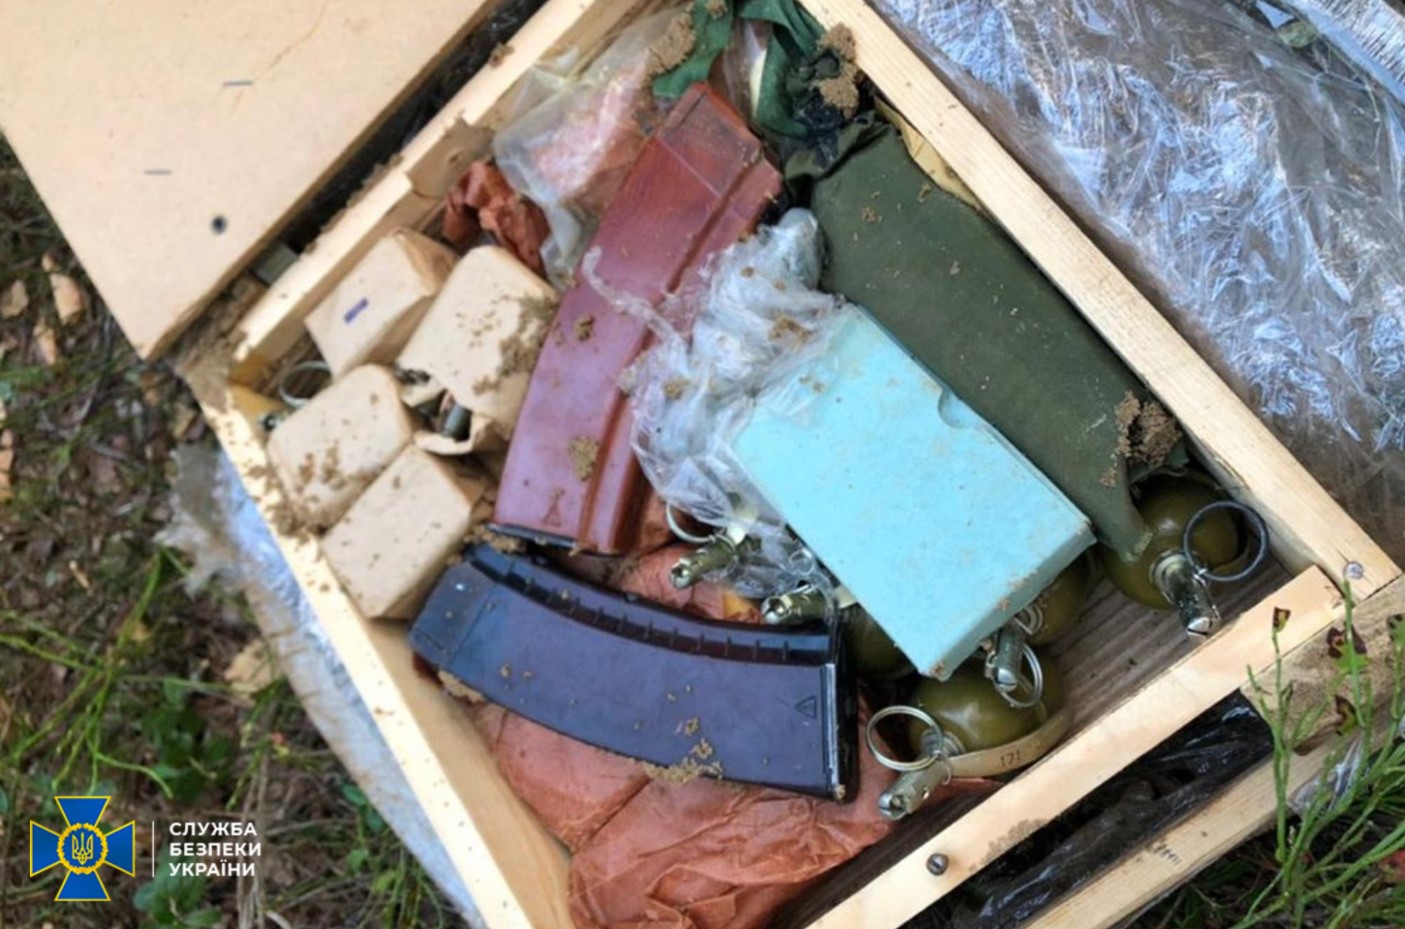 Схрон с оружием и взрывчаткой нашли у беларусской границы в Украине